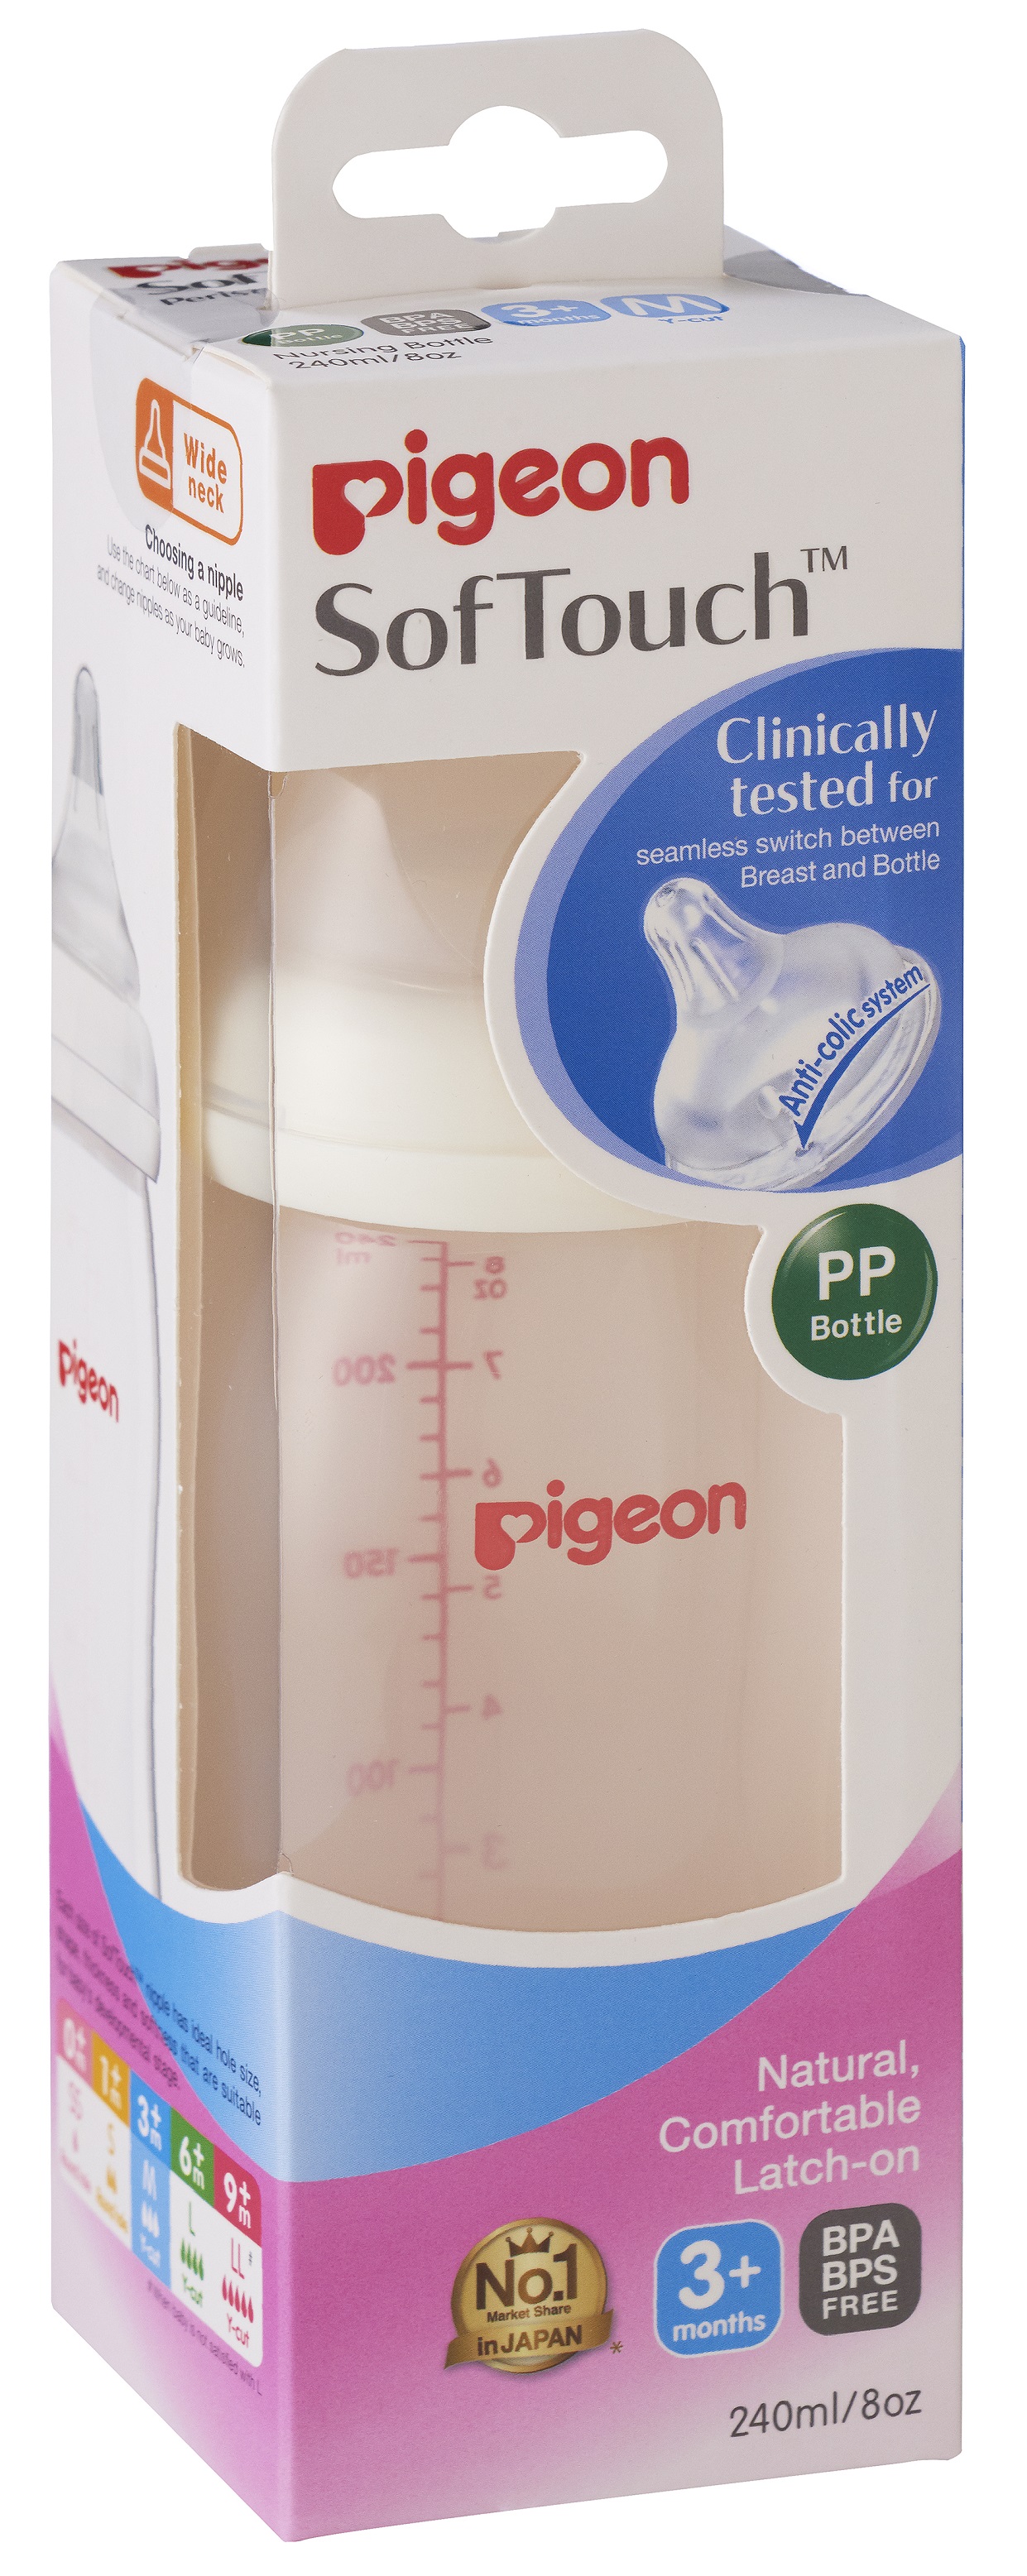 Pigeon SofTouch Nursing Bottle PP 240ml (M) (PG-78488)